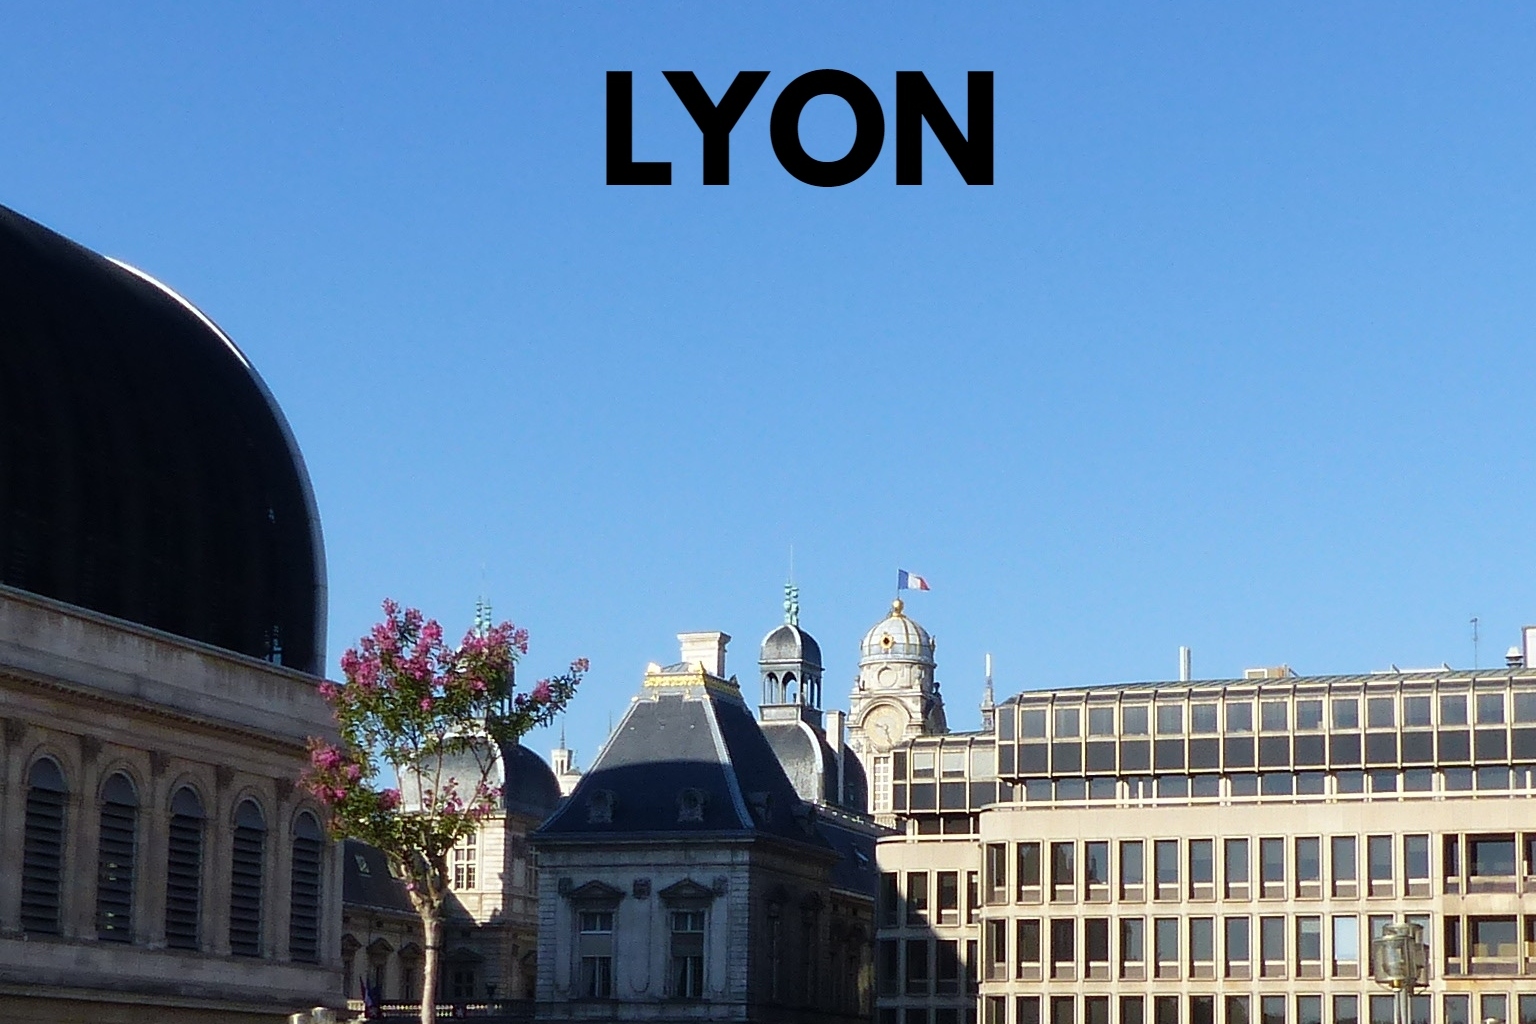 LYON (1)